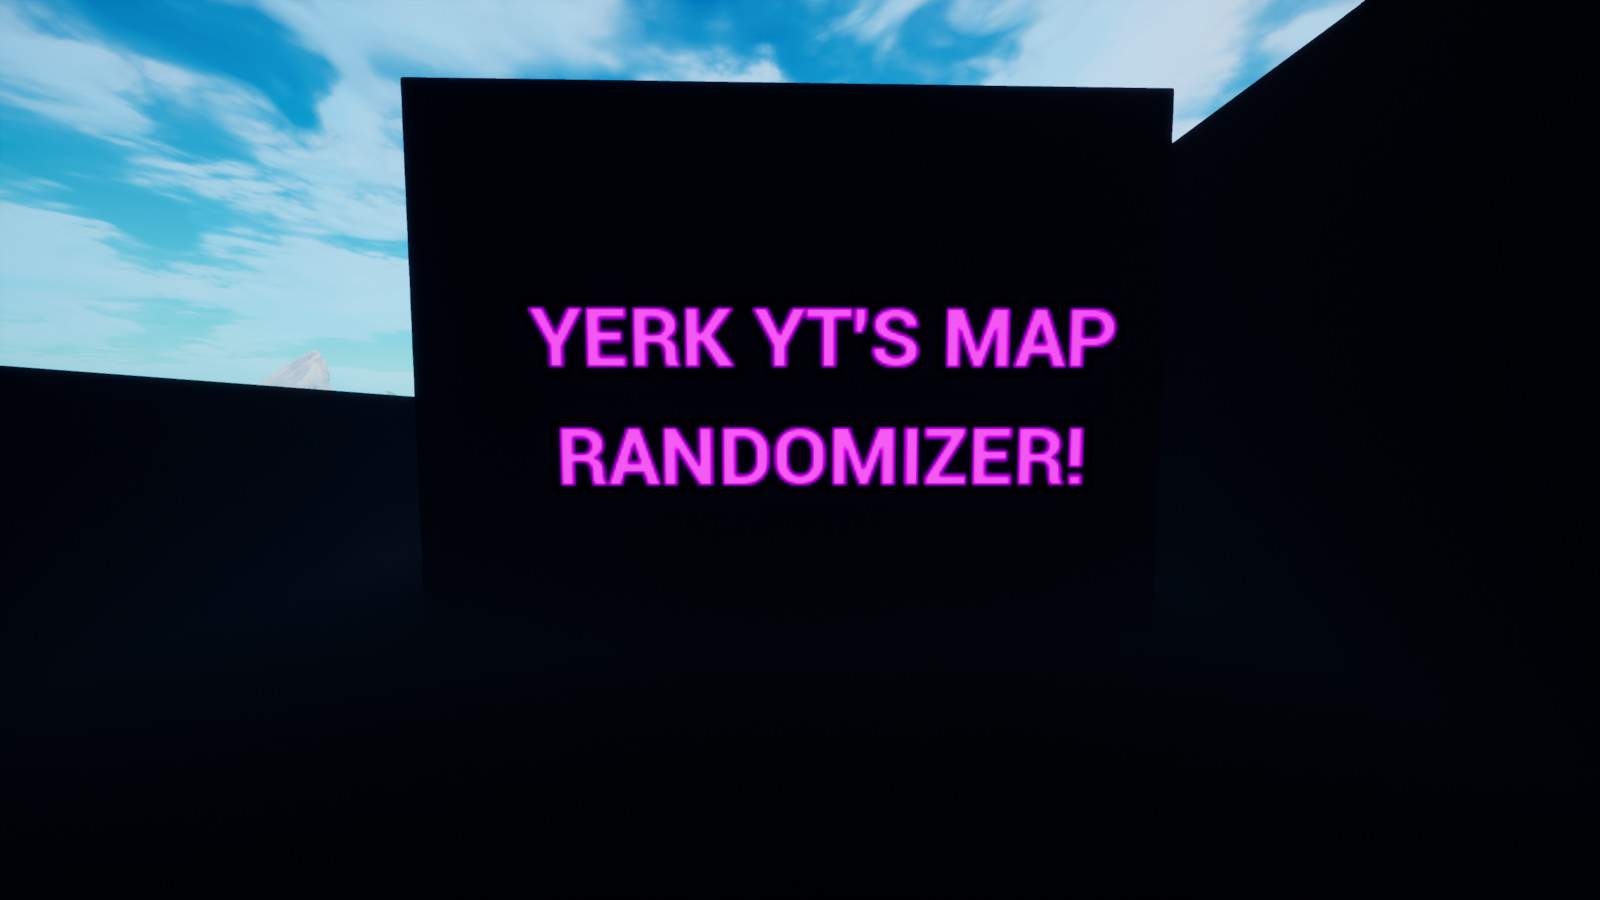 YERK YT'S MAP RANDOMIZER!